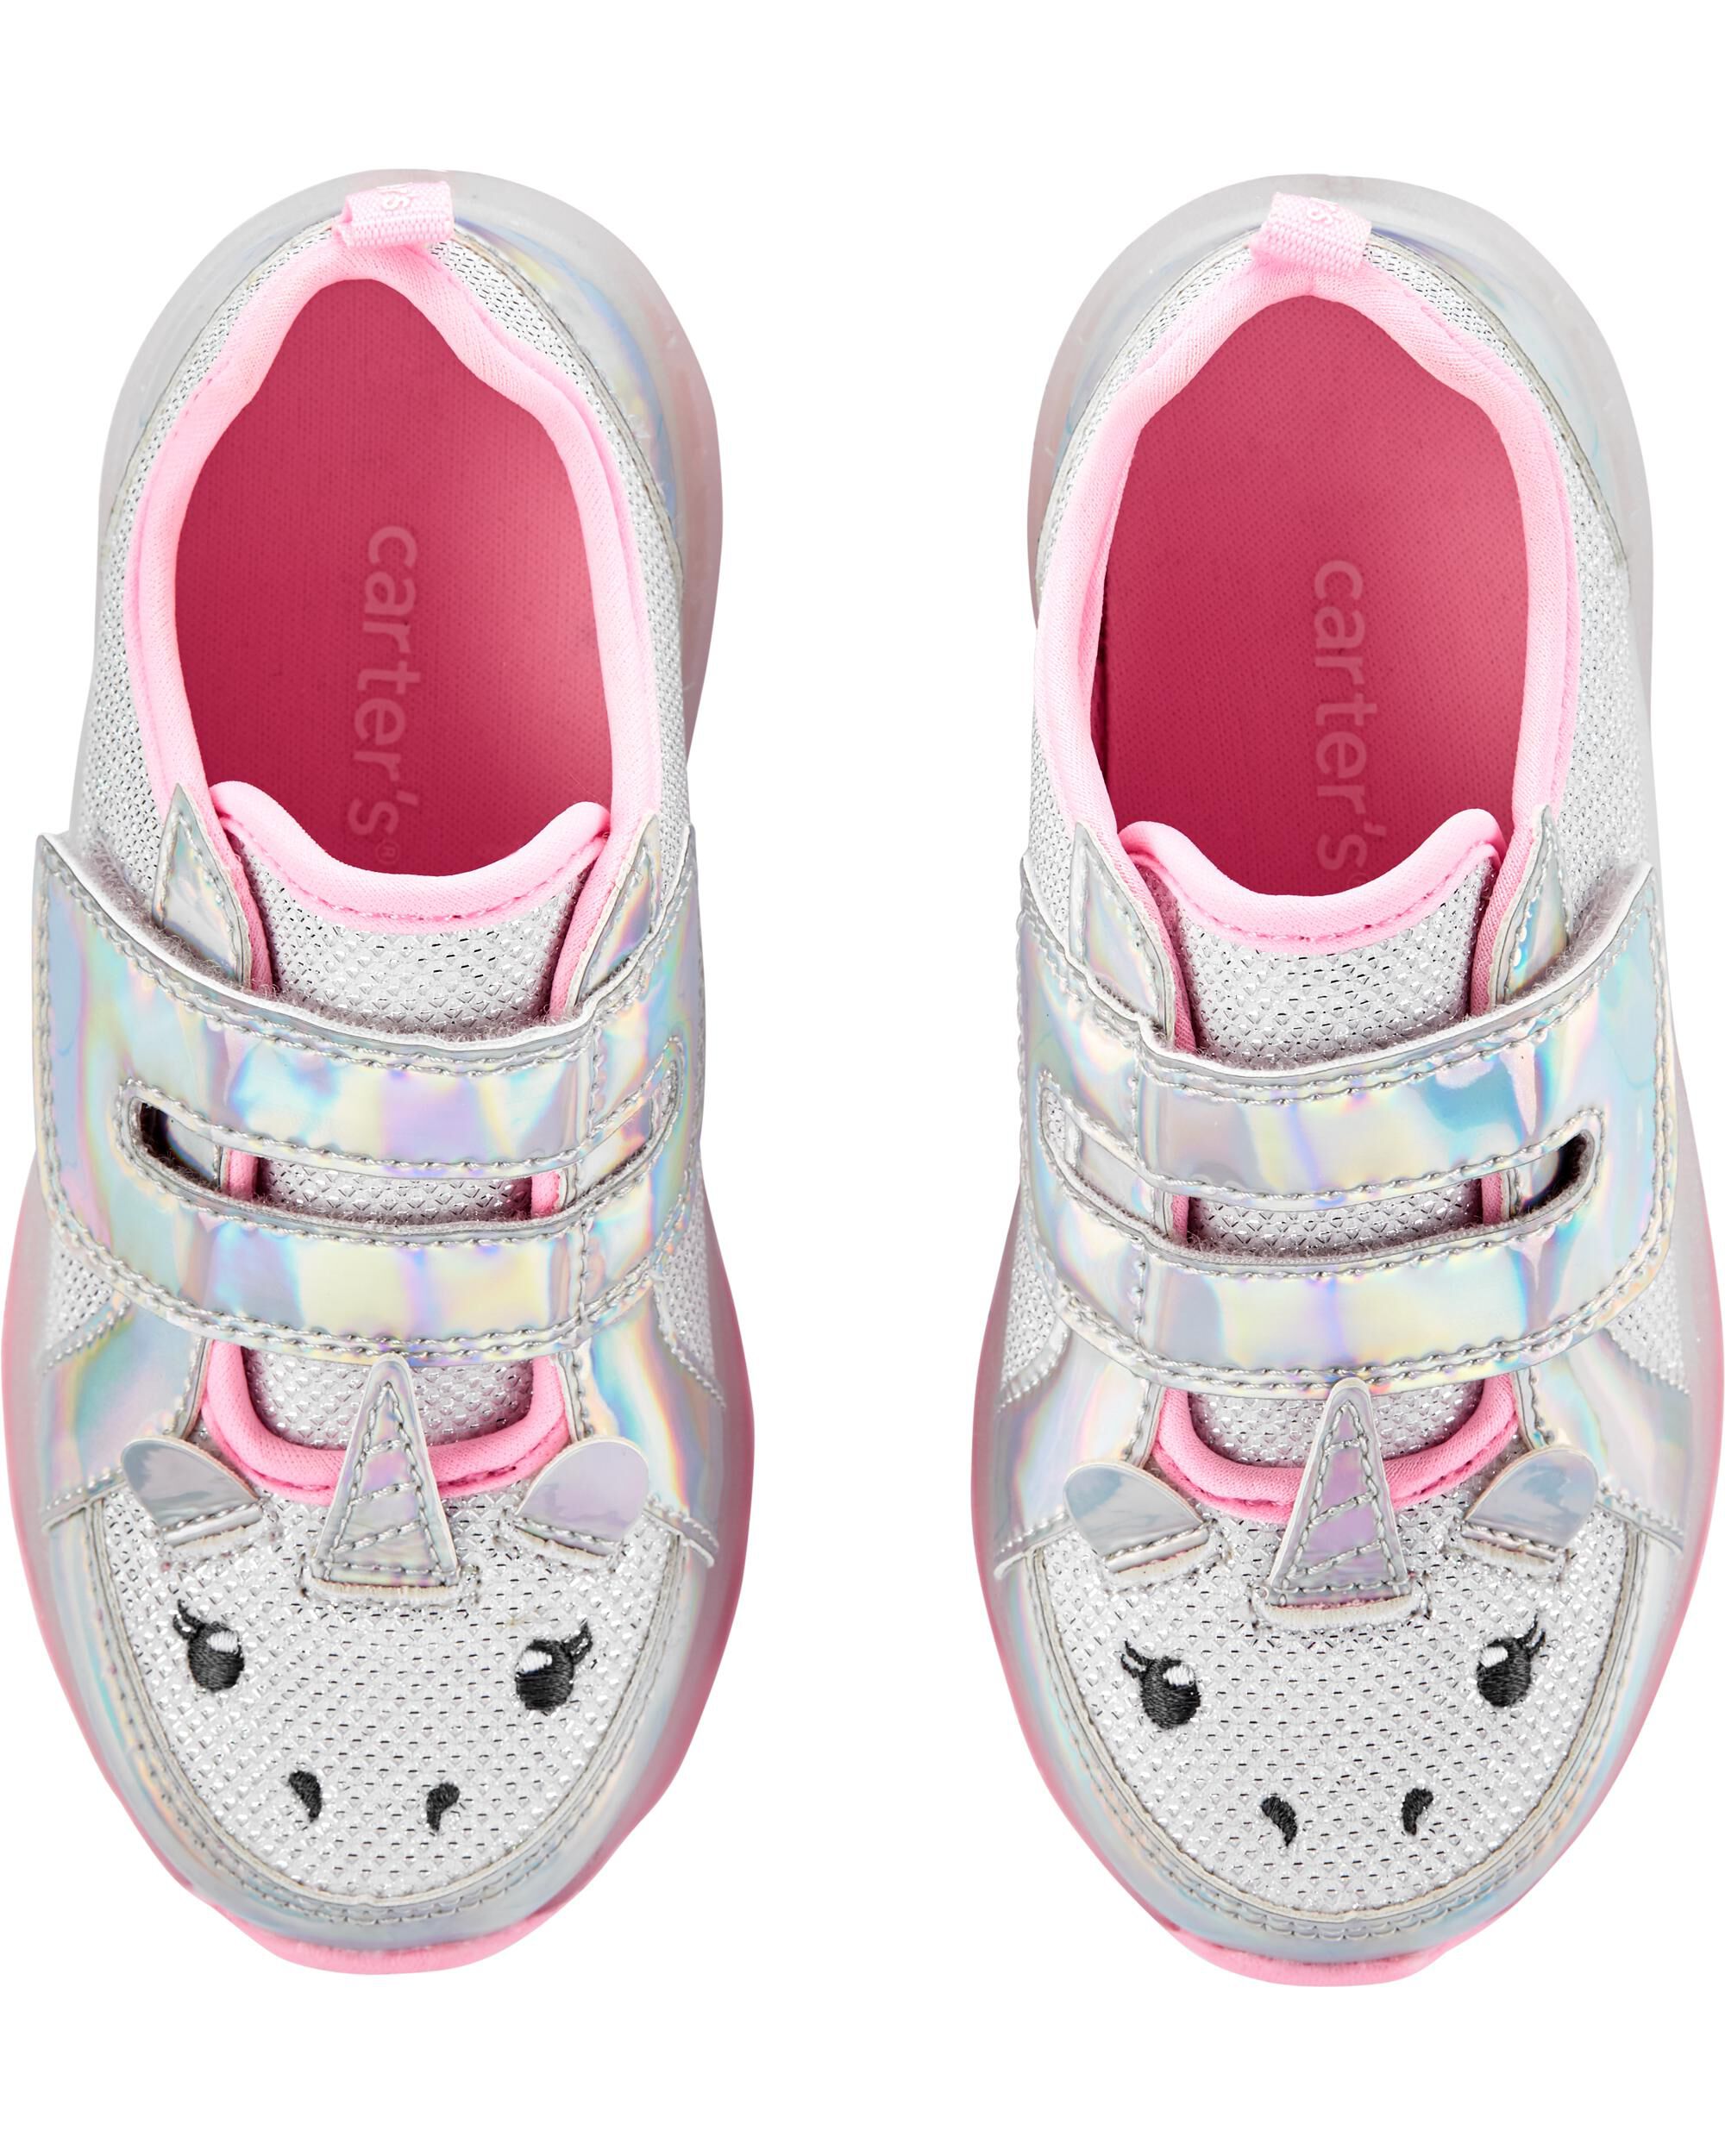 light up unicorn shoes